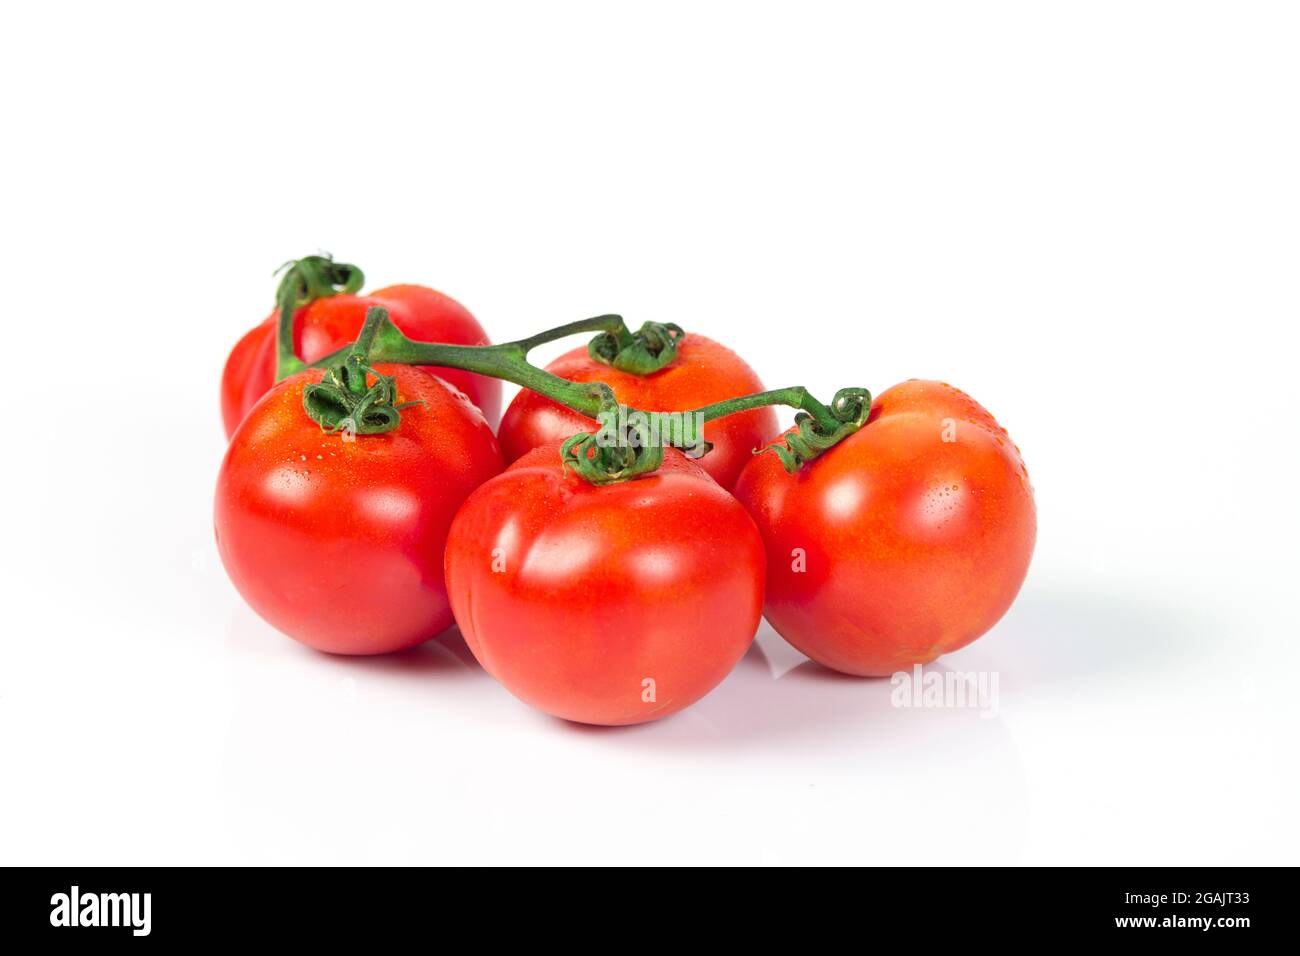 Fotos von Gemüse und Obst auf weißem Hintergrund Fotos des Tages. goog Qualität, editierbar #Fotos #Fotografie #Foto #photooftheday #Fotograf Stockfoto